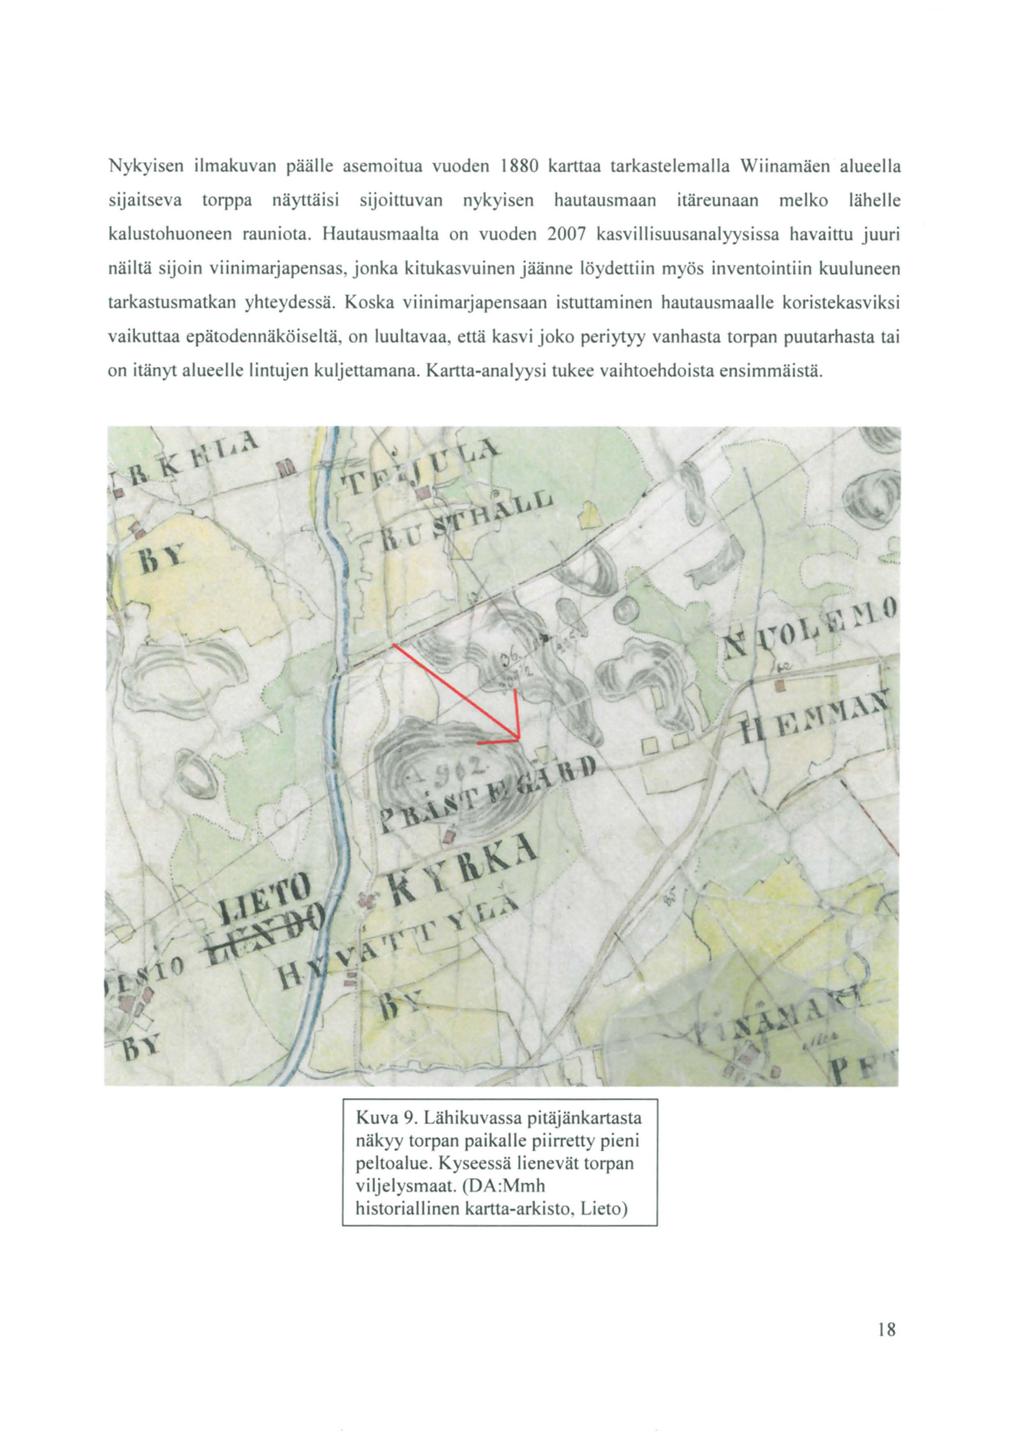 Nykyisen ilmakuvan päälle asemaitua vuoden 1880 karttaa tarkastelemalla Wiinamäen alueella sijaitseva torppa näyttäisi sijoittuvan nykyisen hautausmaan itäreunaan melko lähelle kalustohuoneen